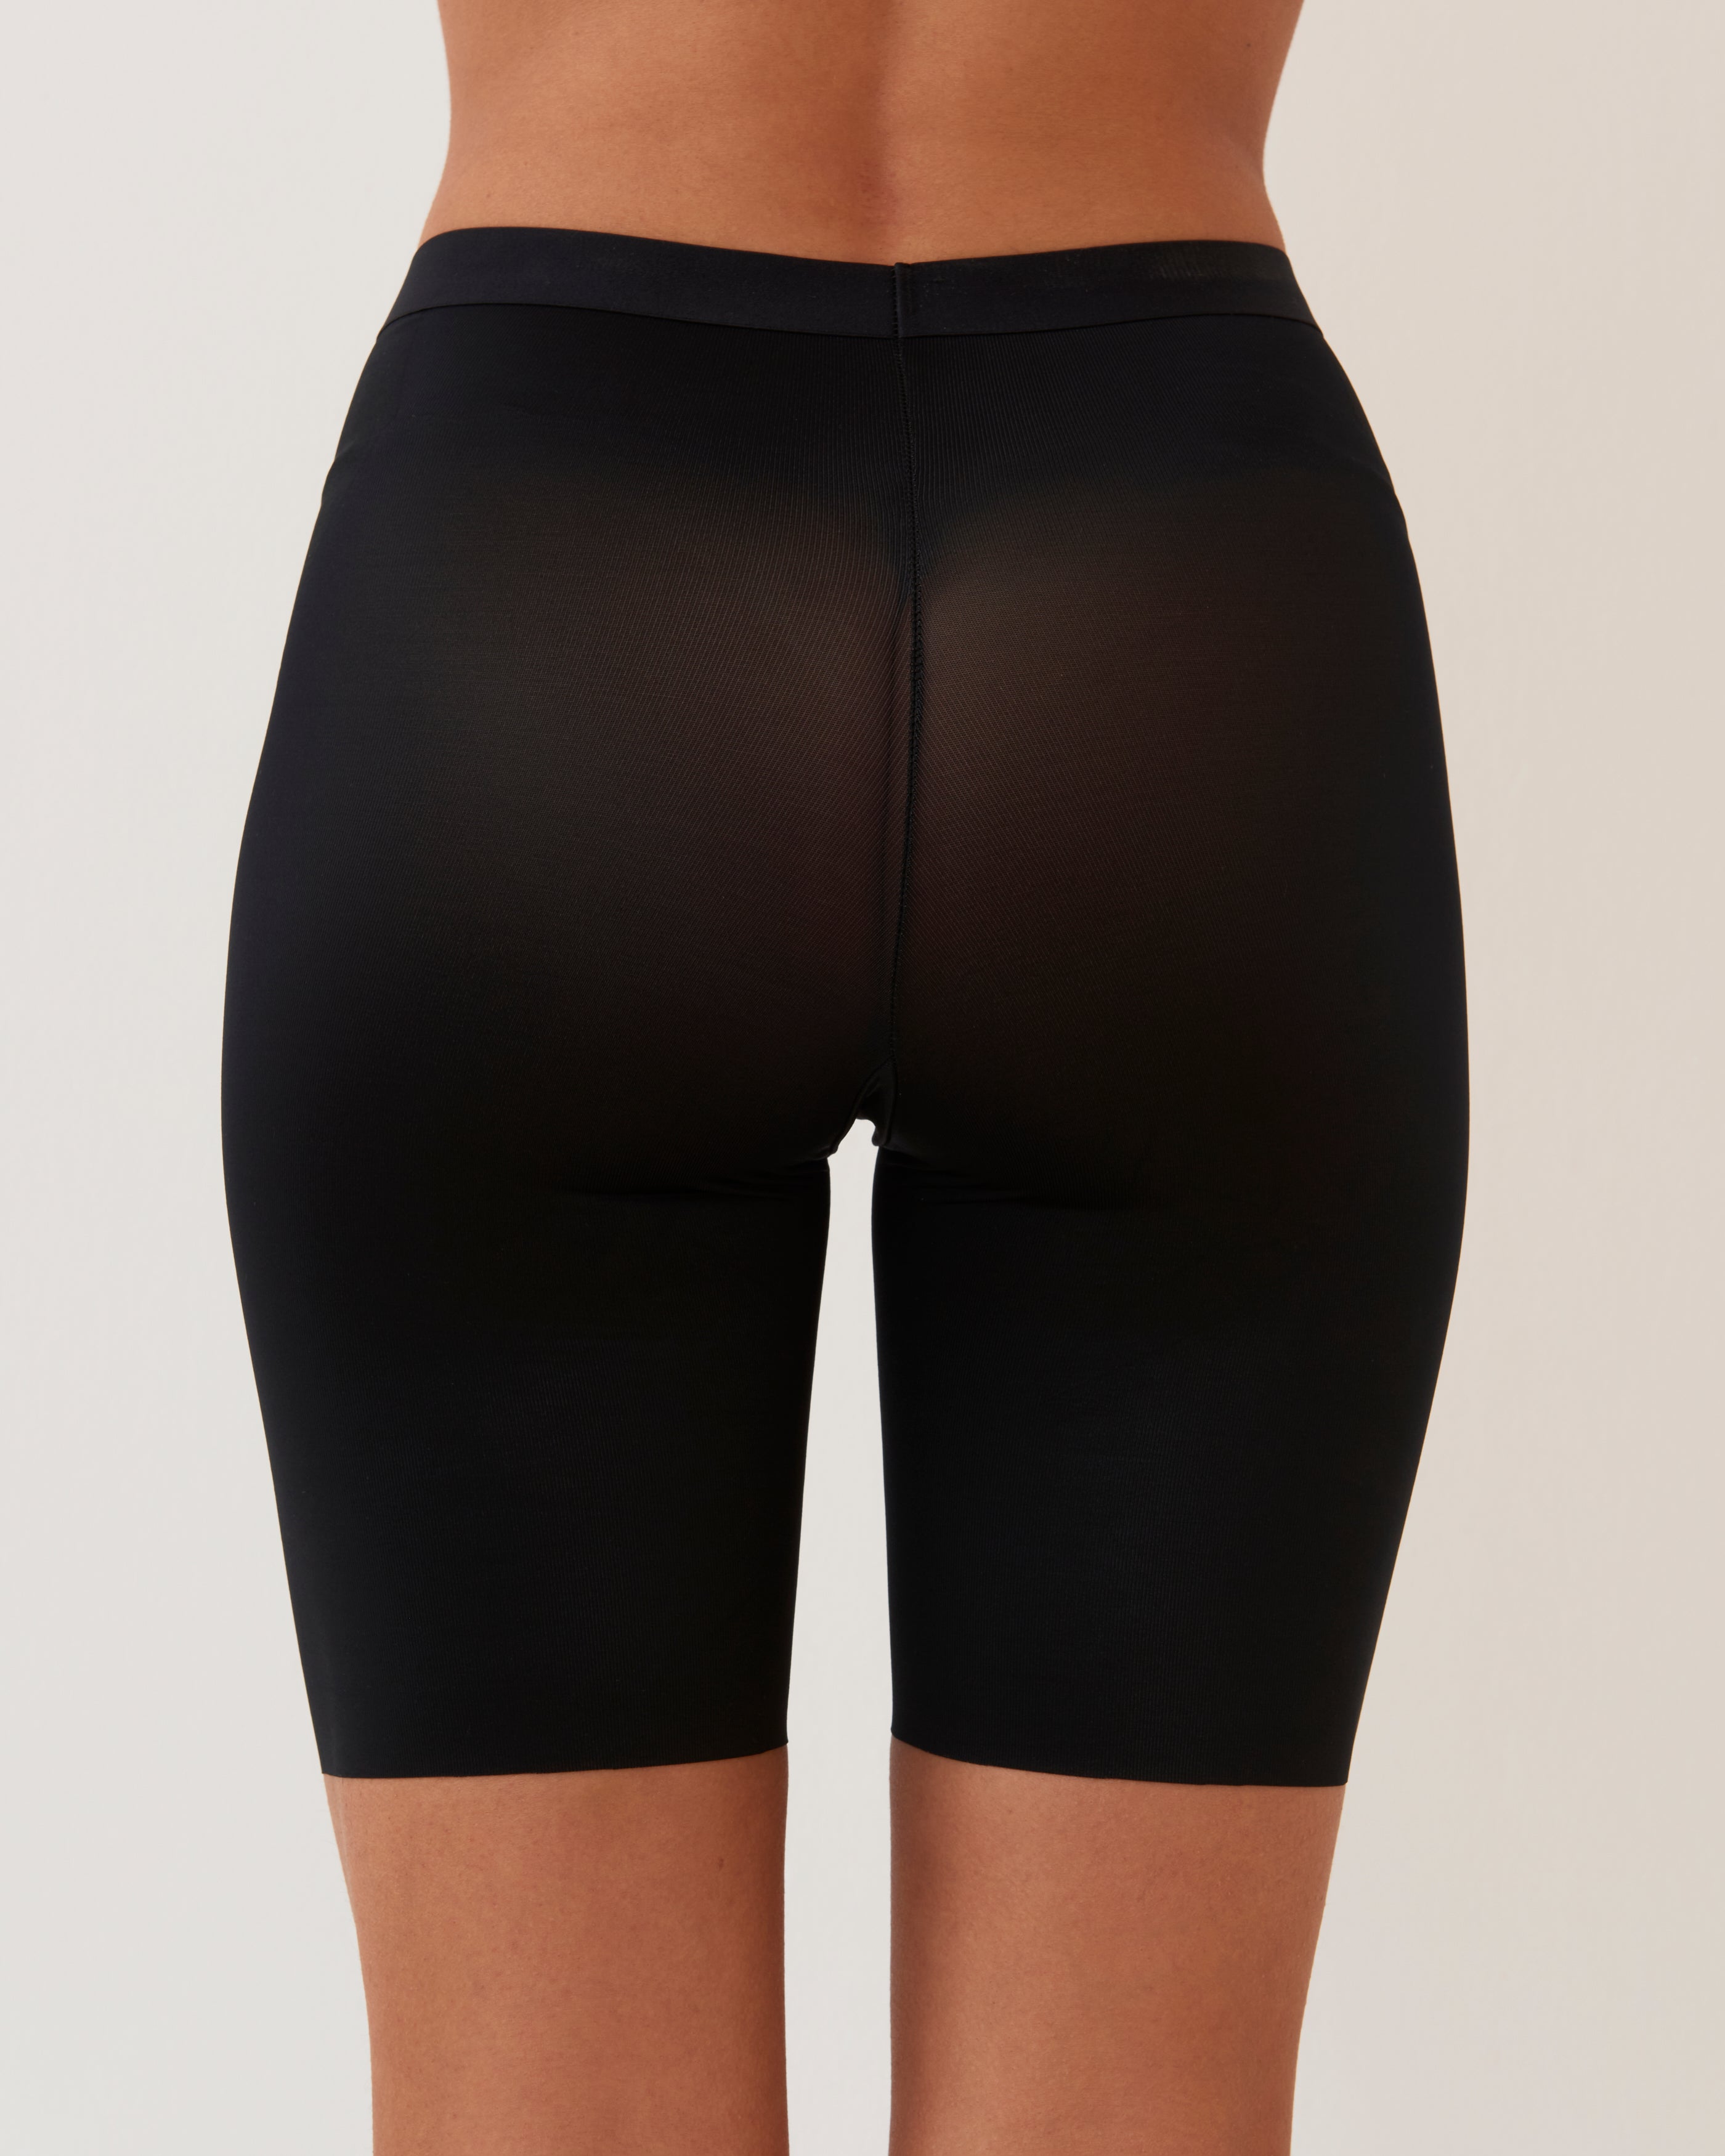 Black Slimming Pants by SPANX